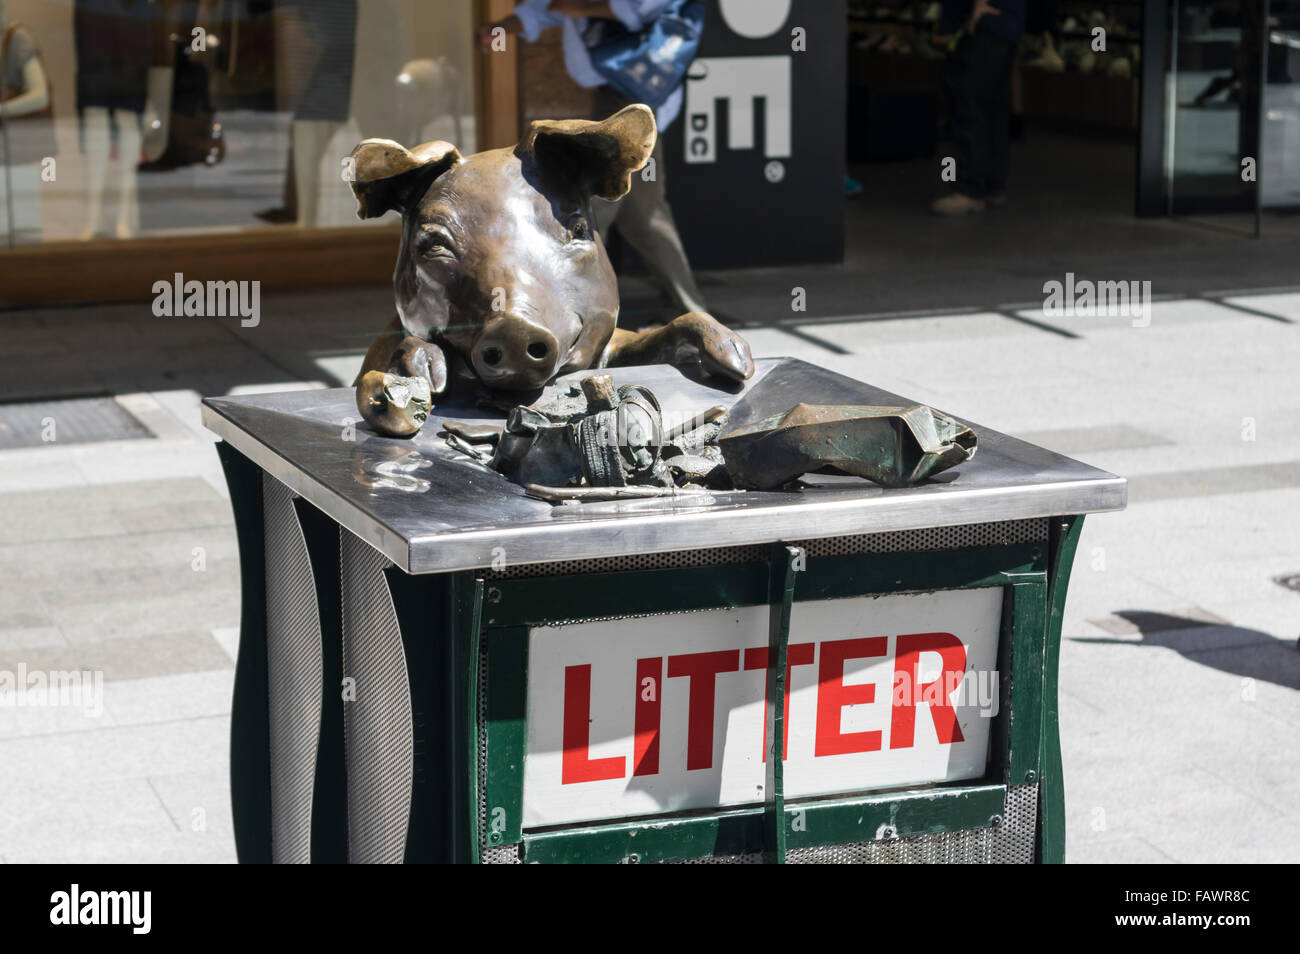 "Einen Tag" von Marguerite Derricourt. Bronze-Skulptur eines Schweins Essen aus einem Abfallbehälter in Rundle Mall, Adelaide, Australien. Stockfoto